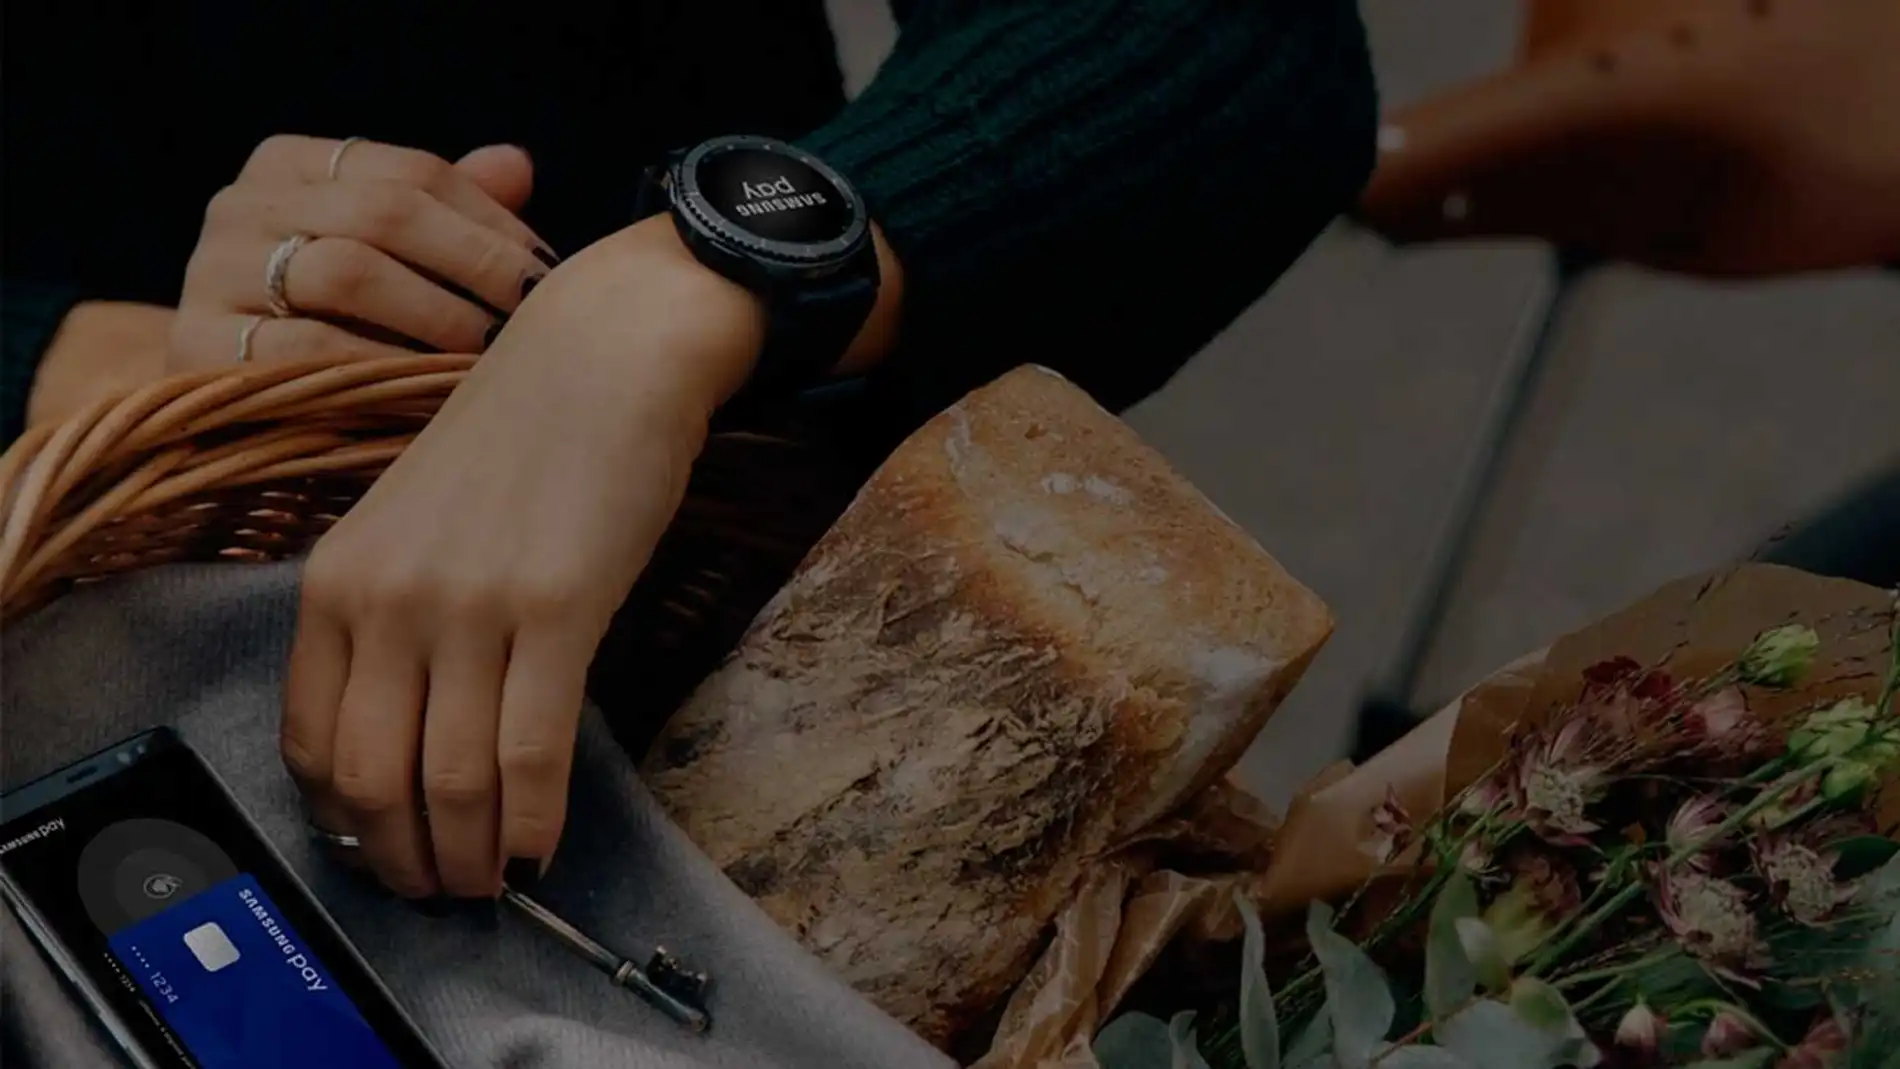 Cómo pagar con tu reloj Samsung aunque no tengas un móvil Samsung